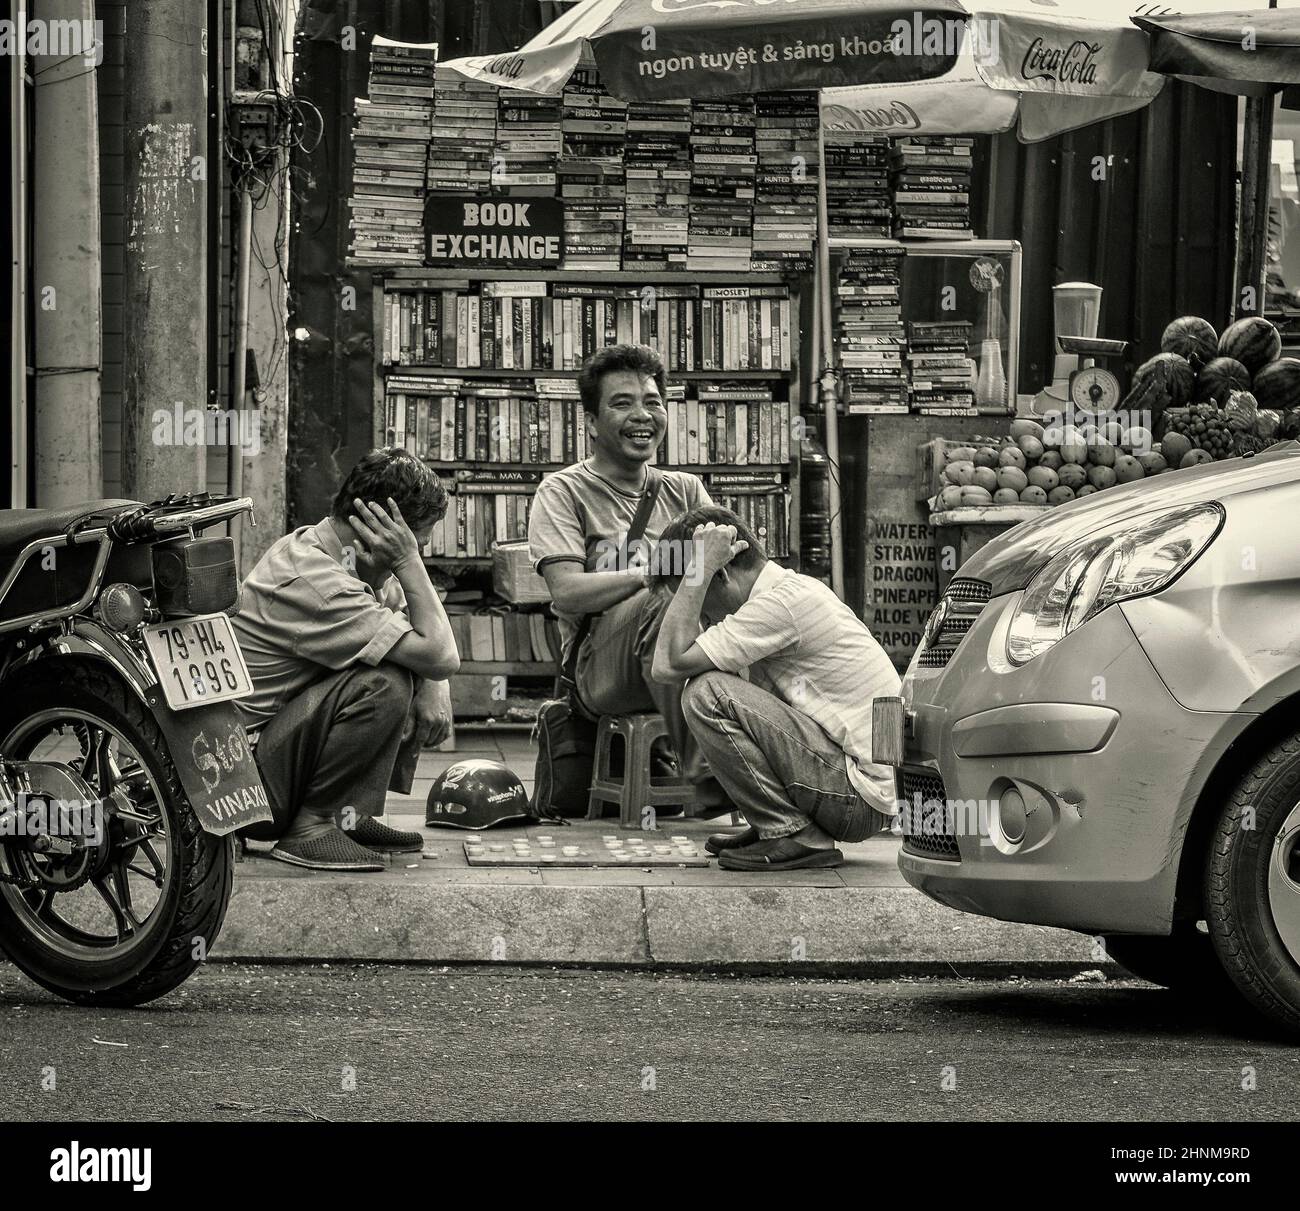 27th maggio 2016. Vietnam, Nha-Trang, scambio di libri su strada Foto Stock